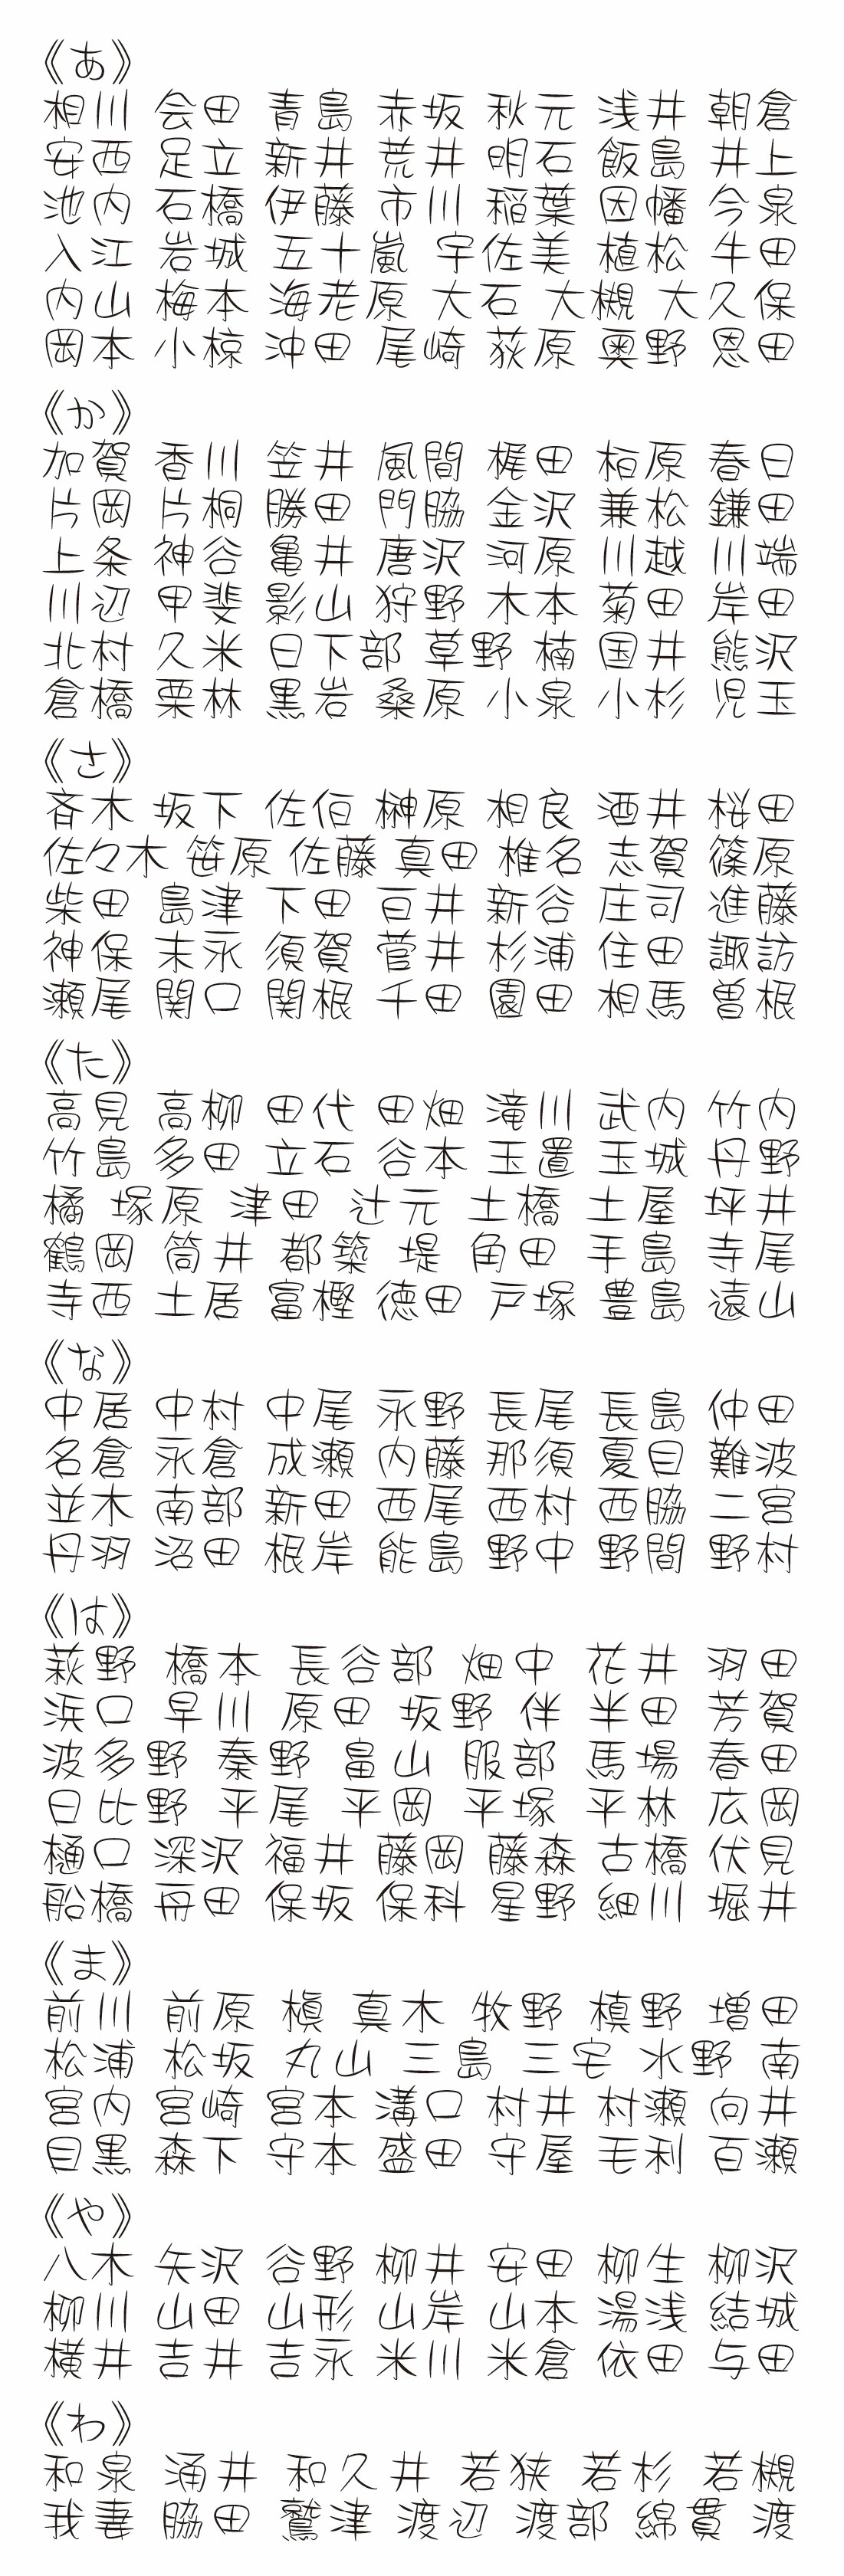 表札 書体 おすすめ 人気 漢字 表和15